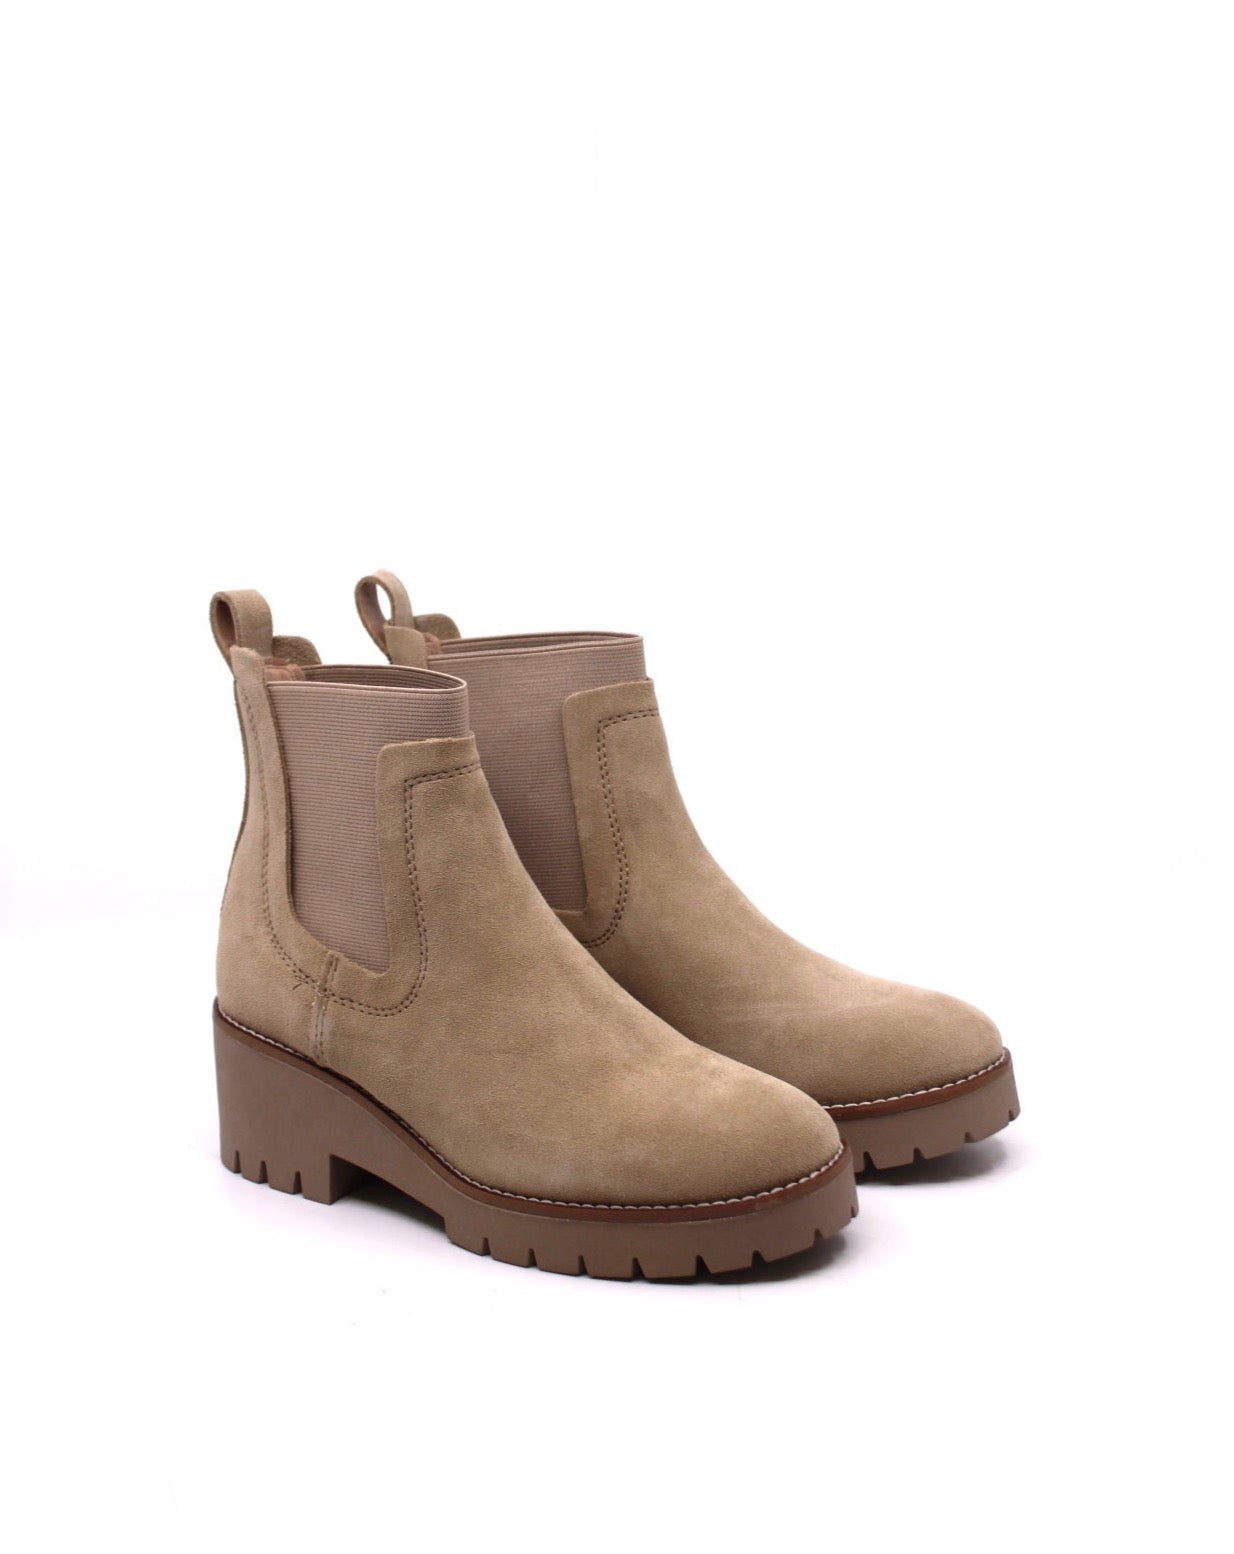 Blondo Boots for Women - Waterproof Styles All Year | Dear Lucy